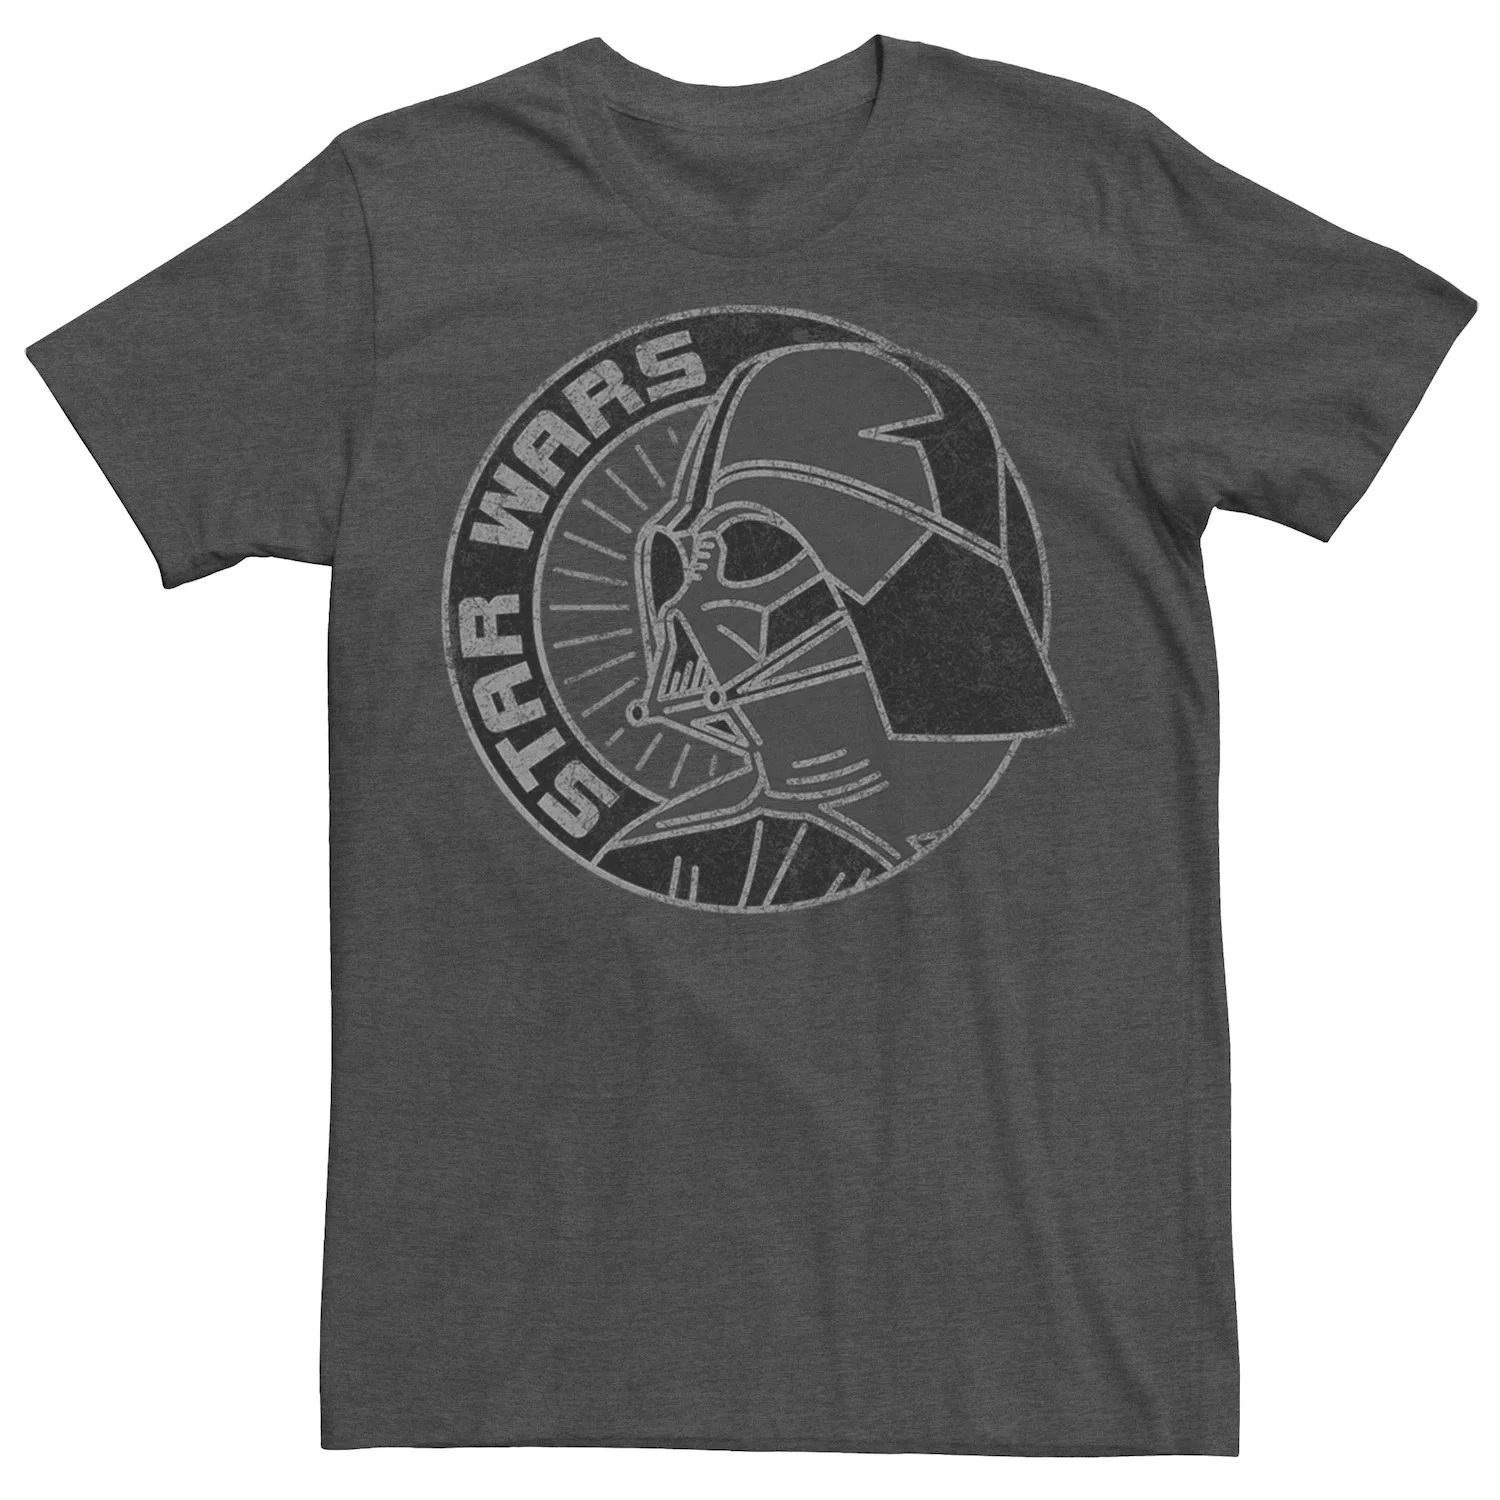 Мужская футболка с портретом в форме круга Дарта Вейдера Star Wars